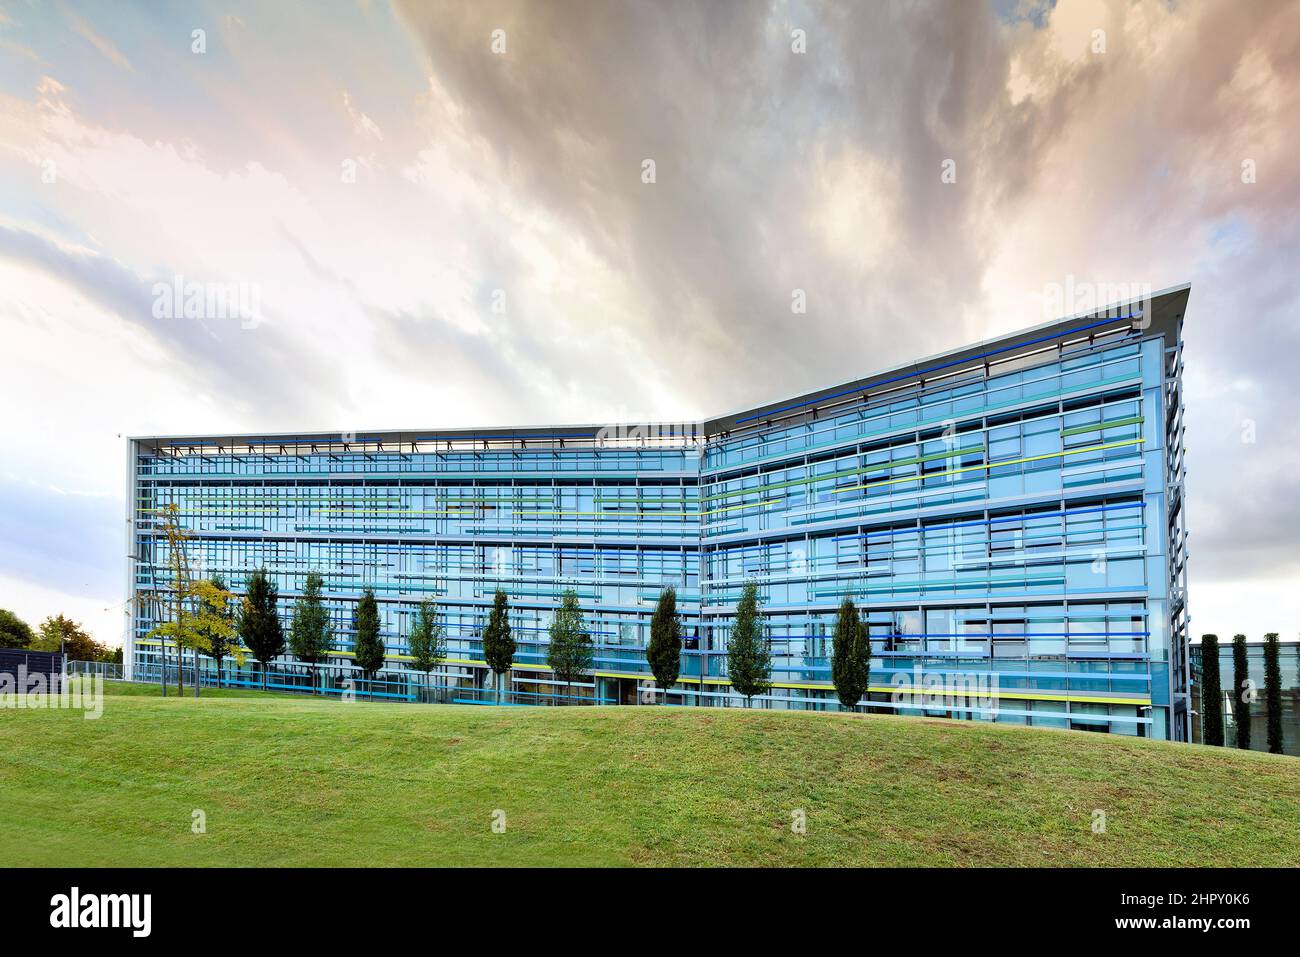 Extérieur du centre d'affaires contemporain en verre au design moderne situé sur une pelouse herbeuse près des arbres de la ville, dans un ciel nuageux Banque D'Images